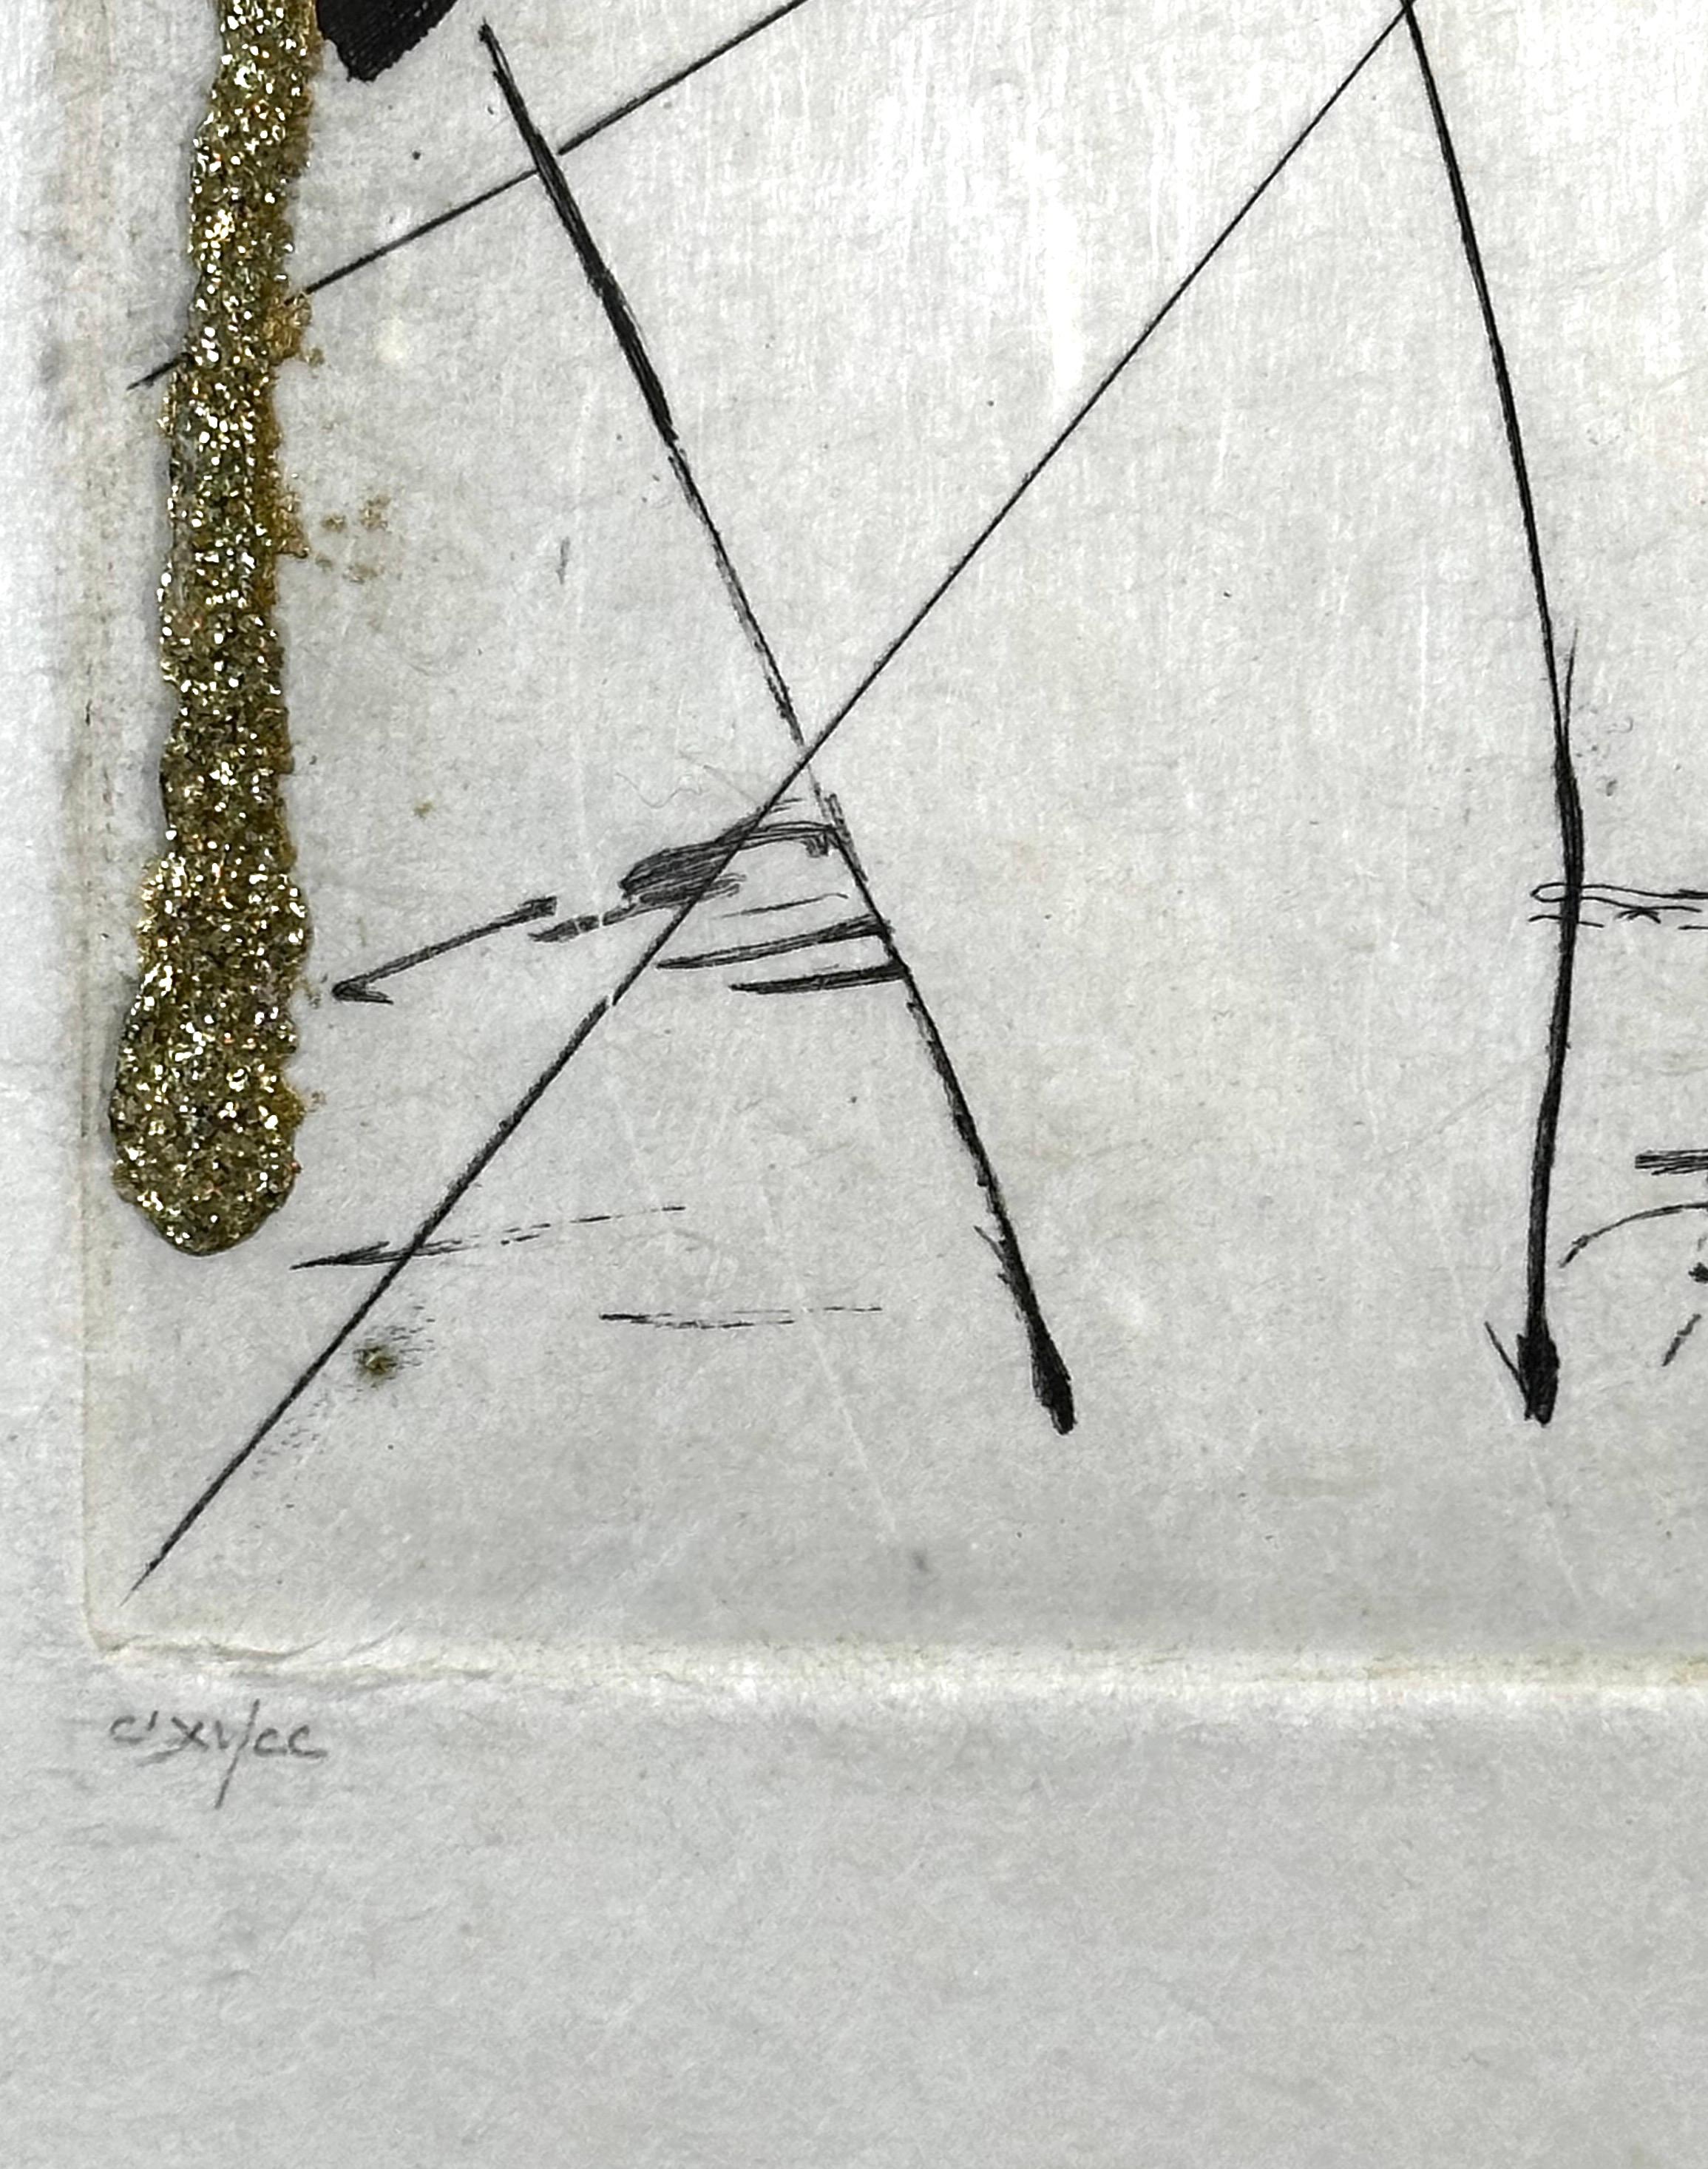 ARTISTE : Salvador Dali

TITRE : Les Amours Jaunes Good Fortune & Fortune

MOYEN : Gravure à l'eau-forte + paillettes d'or

SIGNÉ : Signé à la main 

NUMÉRO D'ÉDITION :  CLXII/CC

MESURES : 11